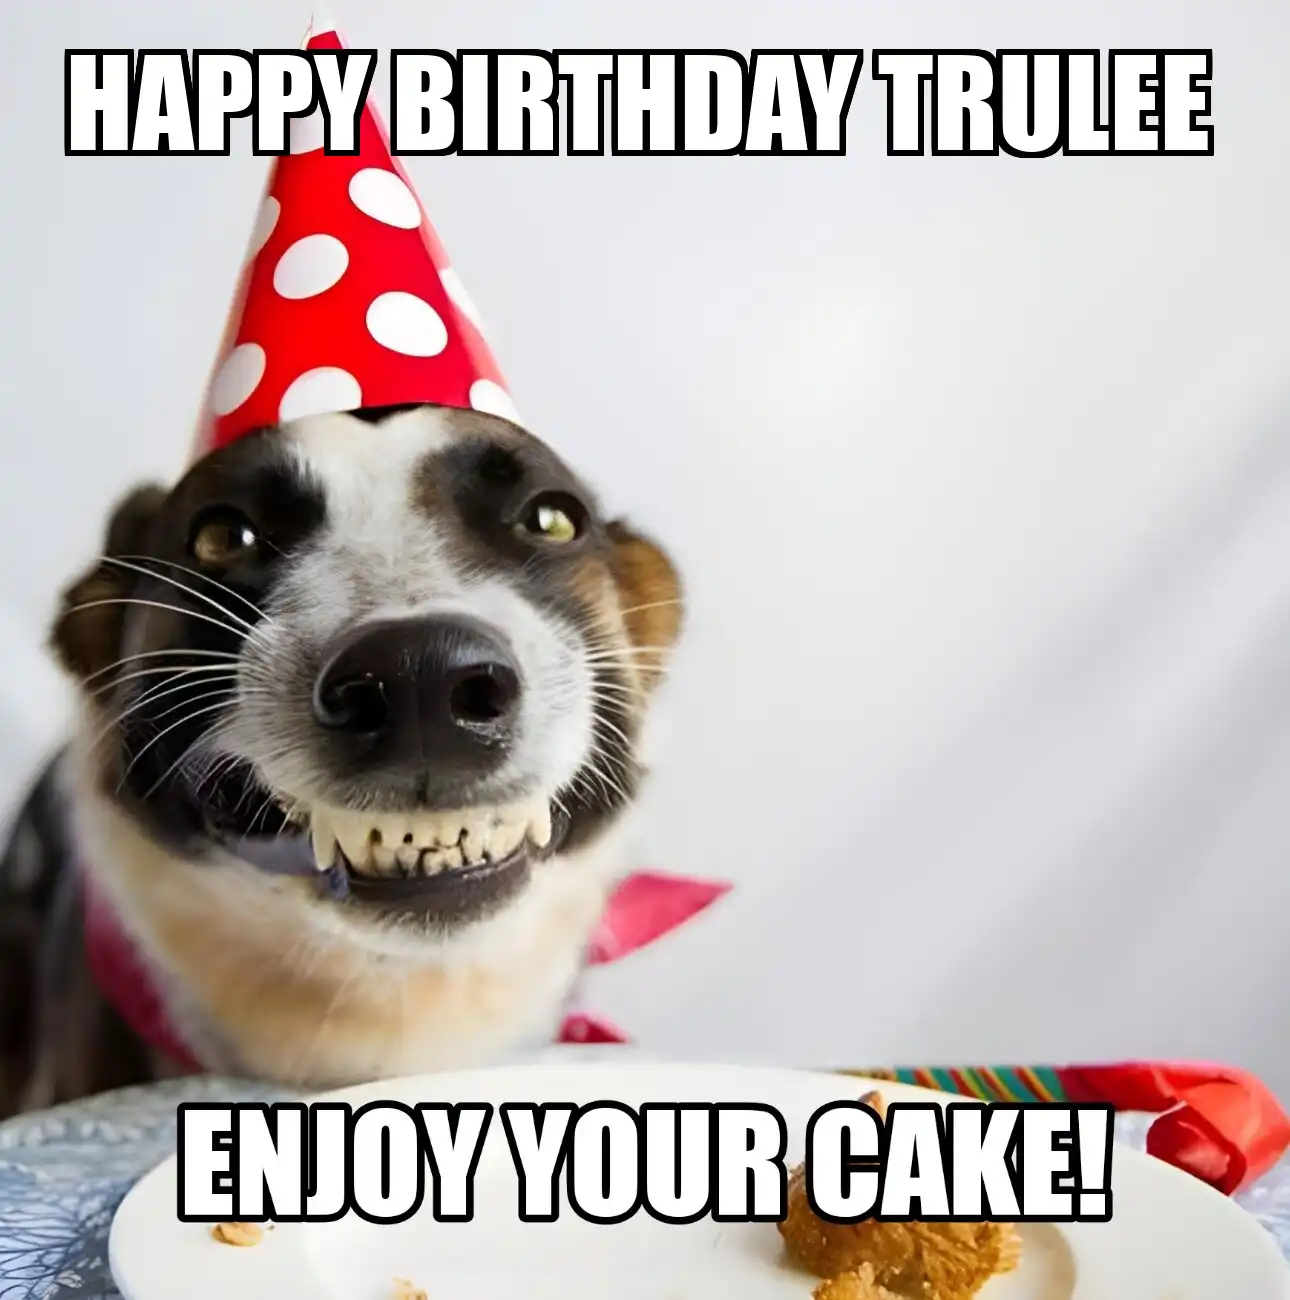 Happy Birthday Trulee Enjoy Your Cake Dog Meme